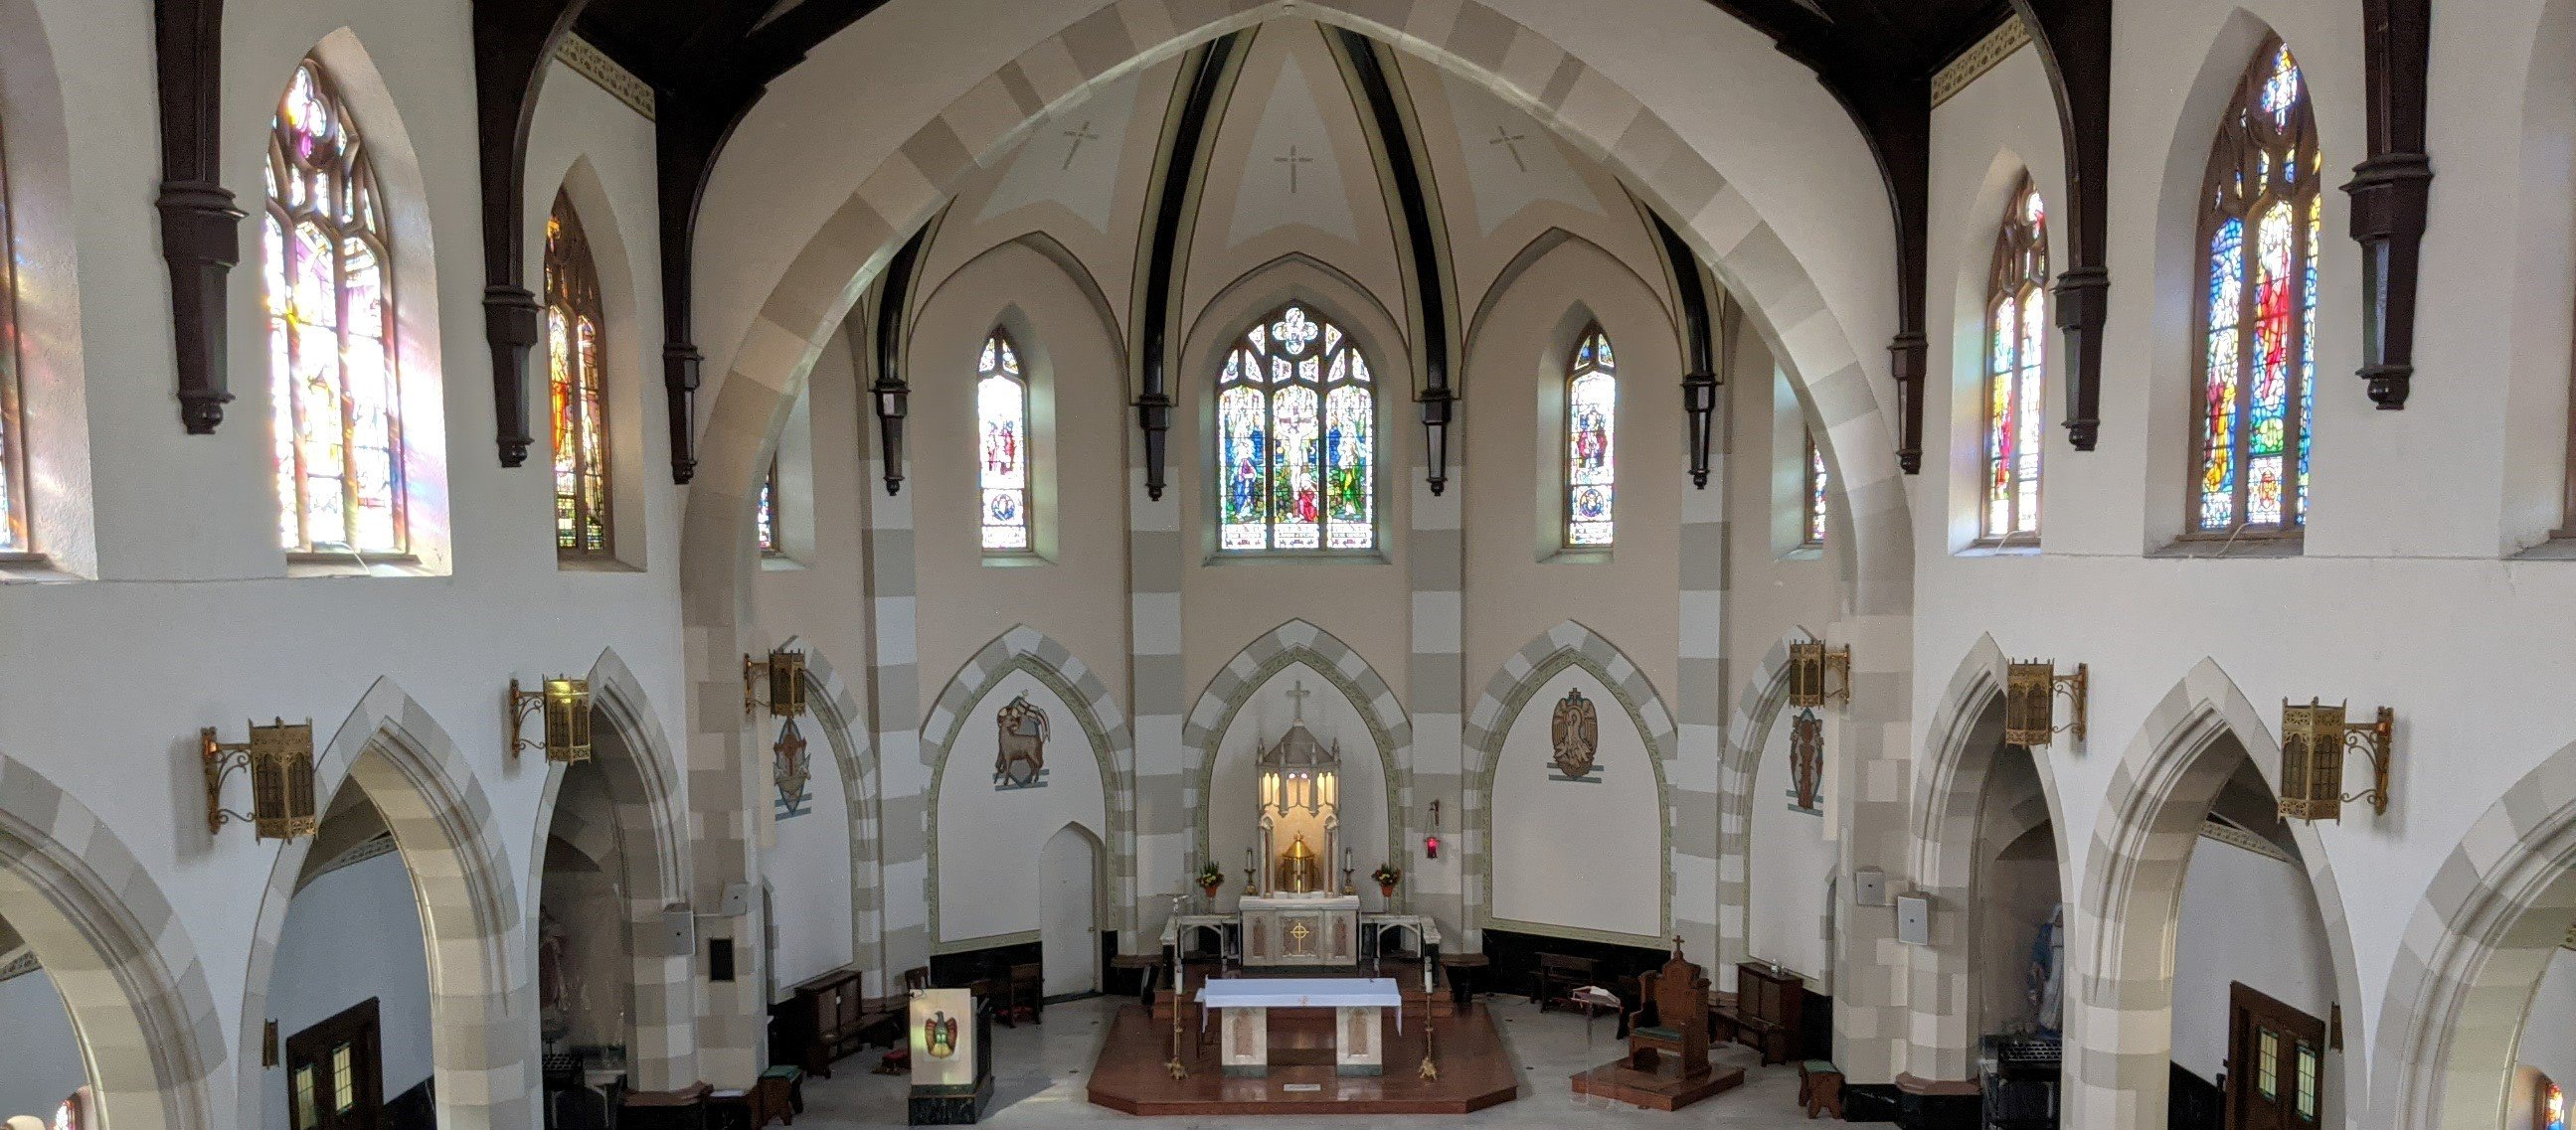 St. John's sanctuary